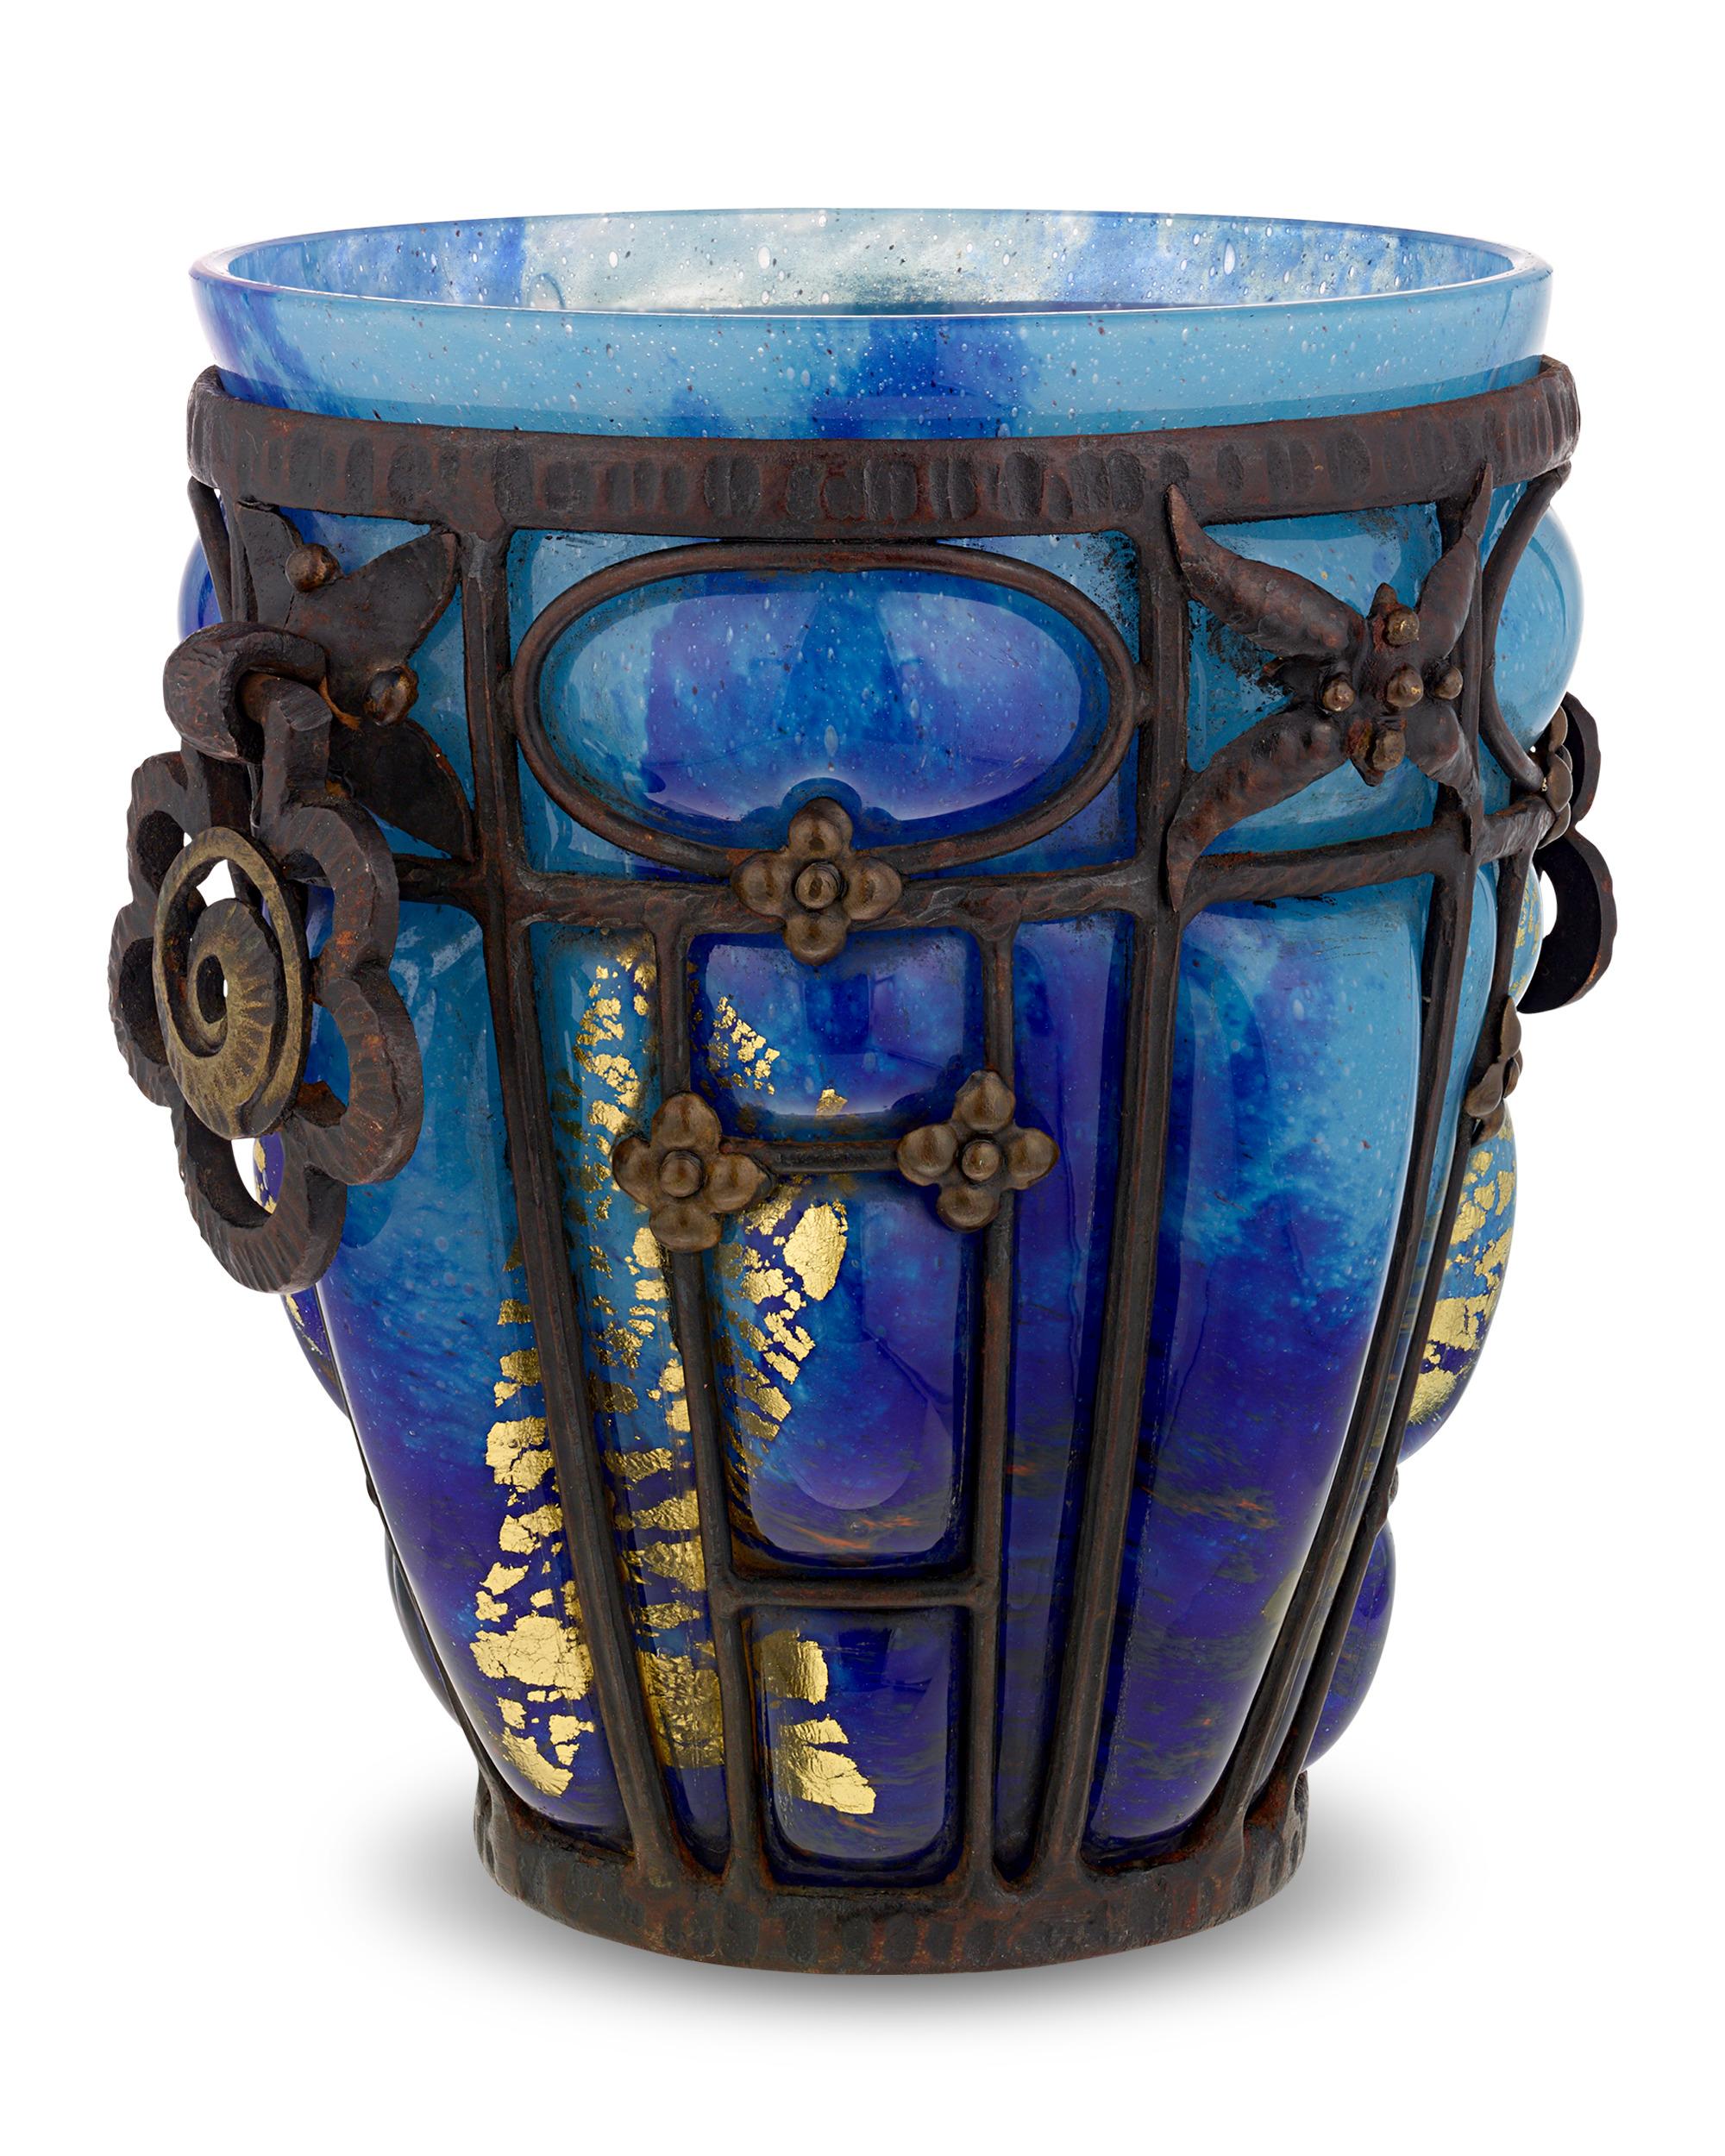 Diese exquisite Vase aus Glas und Schmiedeeisen ist das Ergebnis einer der berühmtesten künstlerischen Kollaborationen des Art déco zwischen Daum Nancy und Louis Majorelle. Daum und Majorelle, die beide für ihre unübertroffene Handwerkskunst und